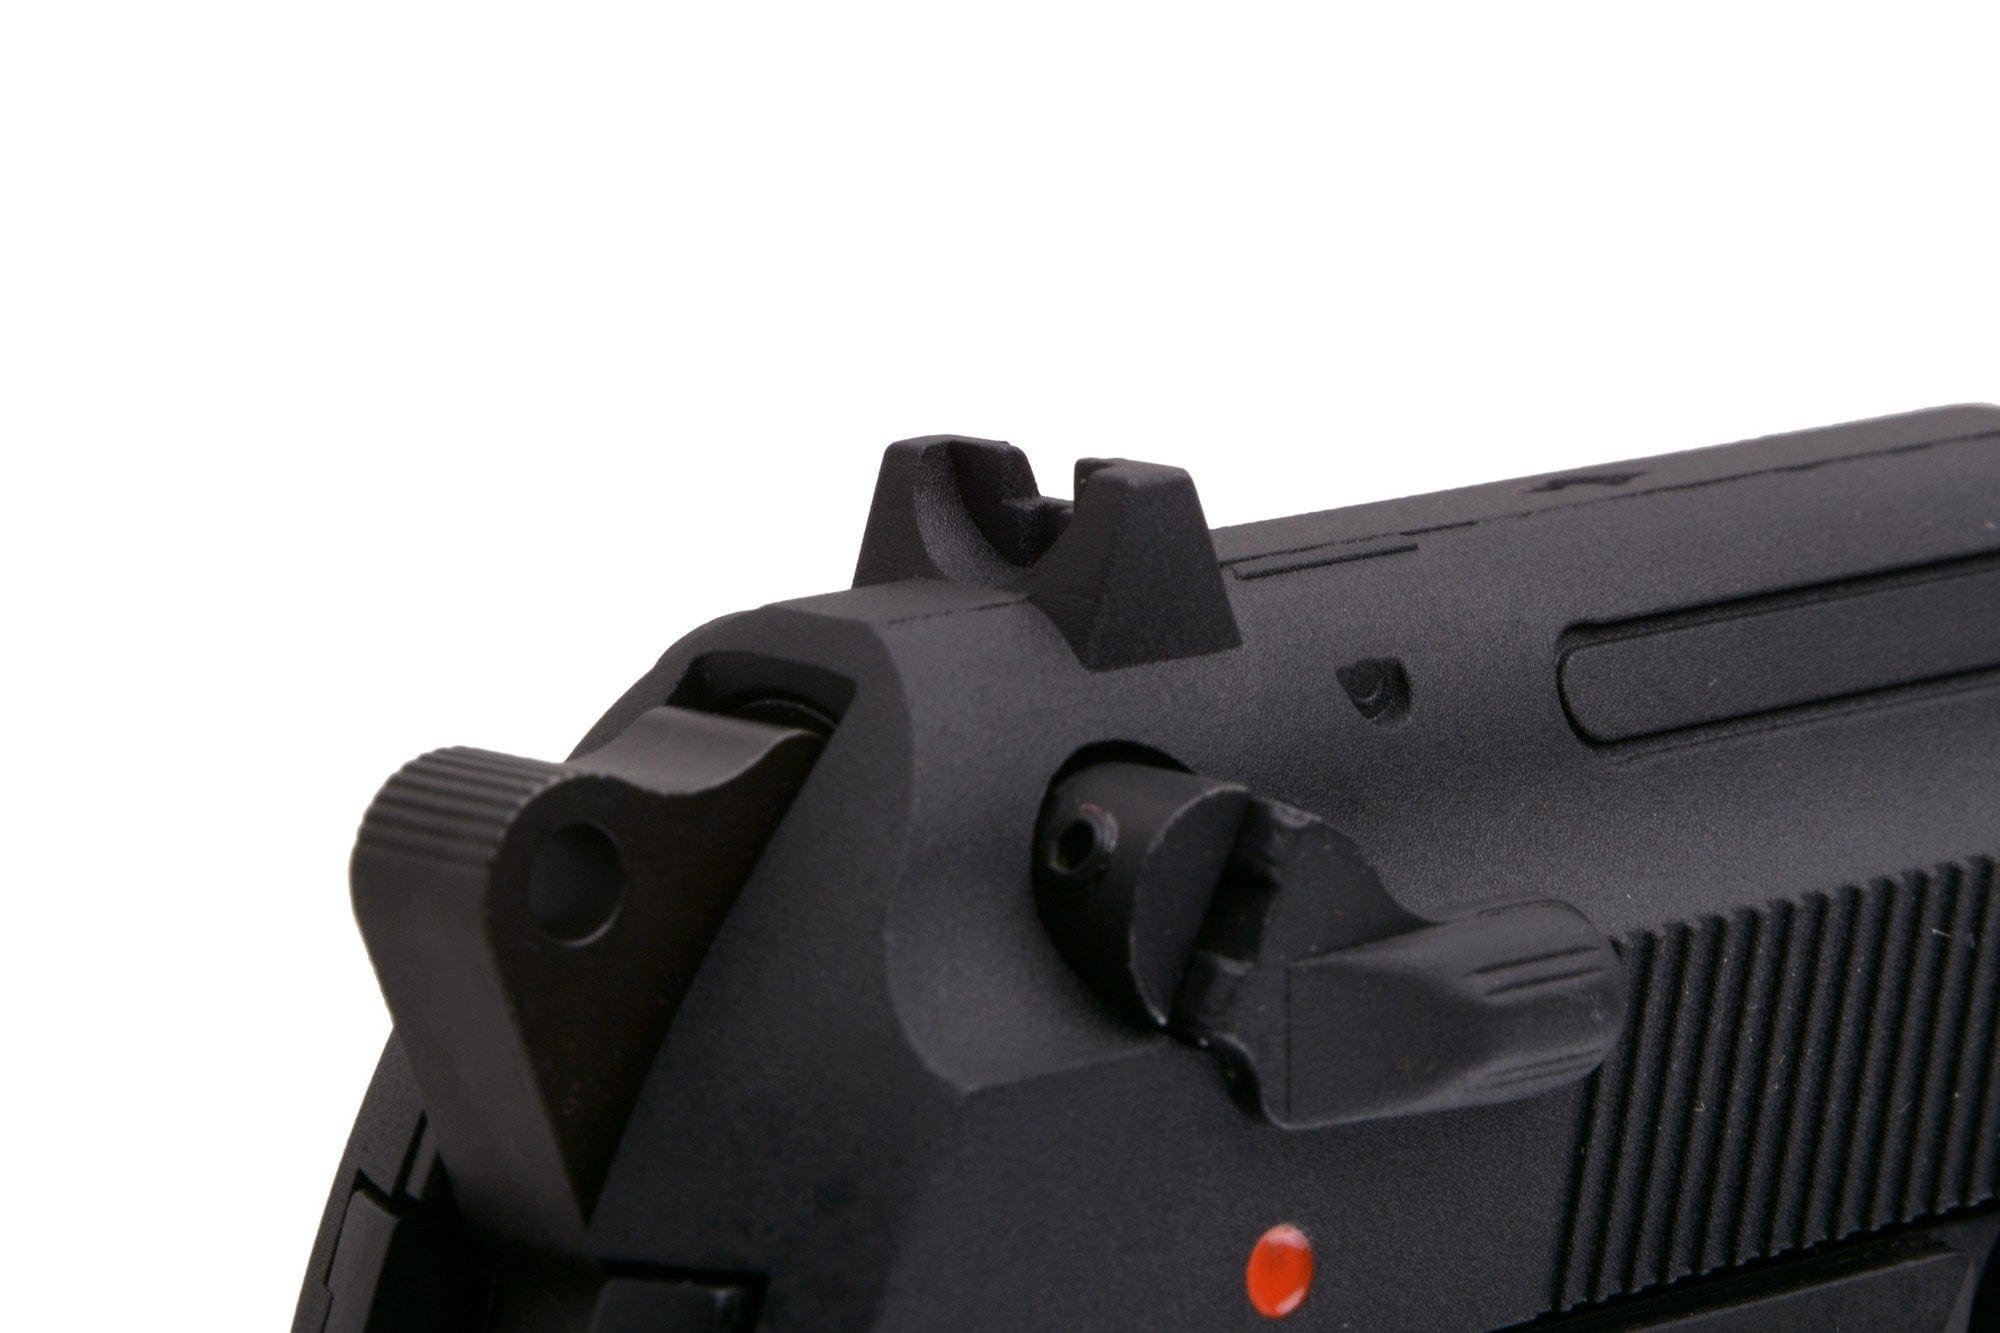 Réplique de pistolet SR92 GBB